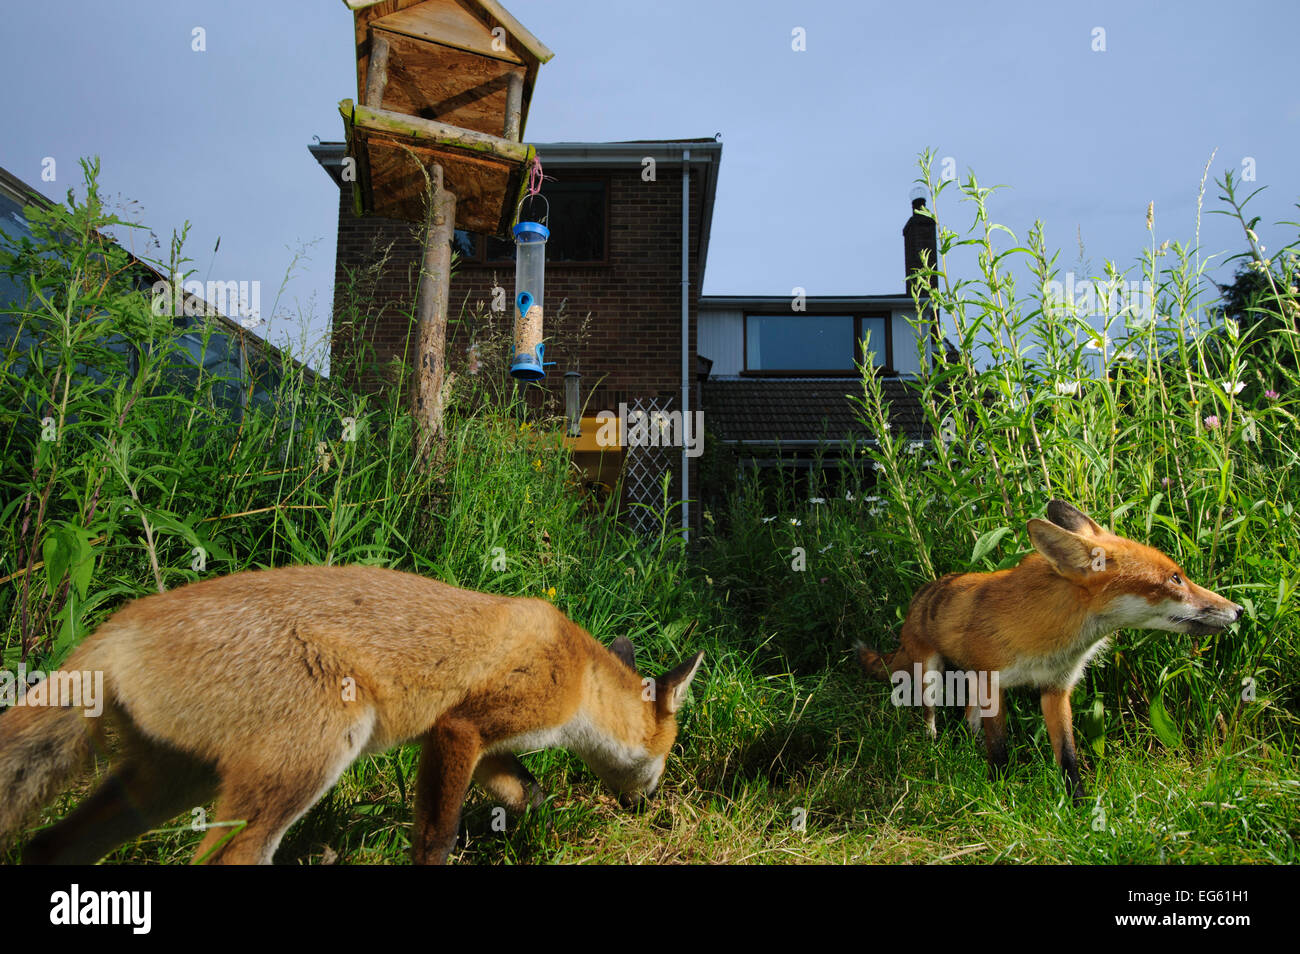 La volpe rossa (Vulpes vulpes vulpes) rovistando in casa di città giardino gestito per widlife. Vixen e cub. Kent, Regno Unito, Giugno. Fotocamera immagine trap. Proprietà rilasciato. Foto Stock